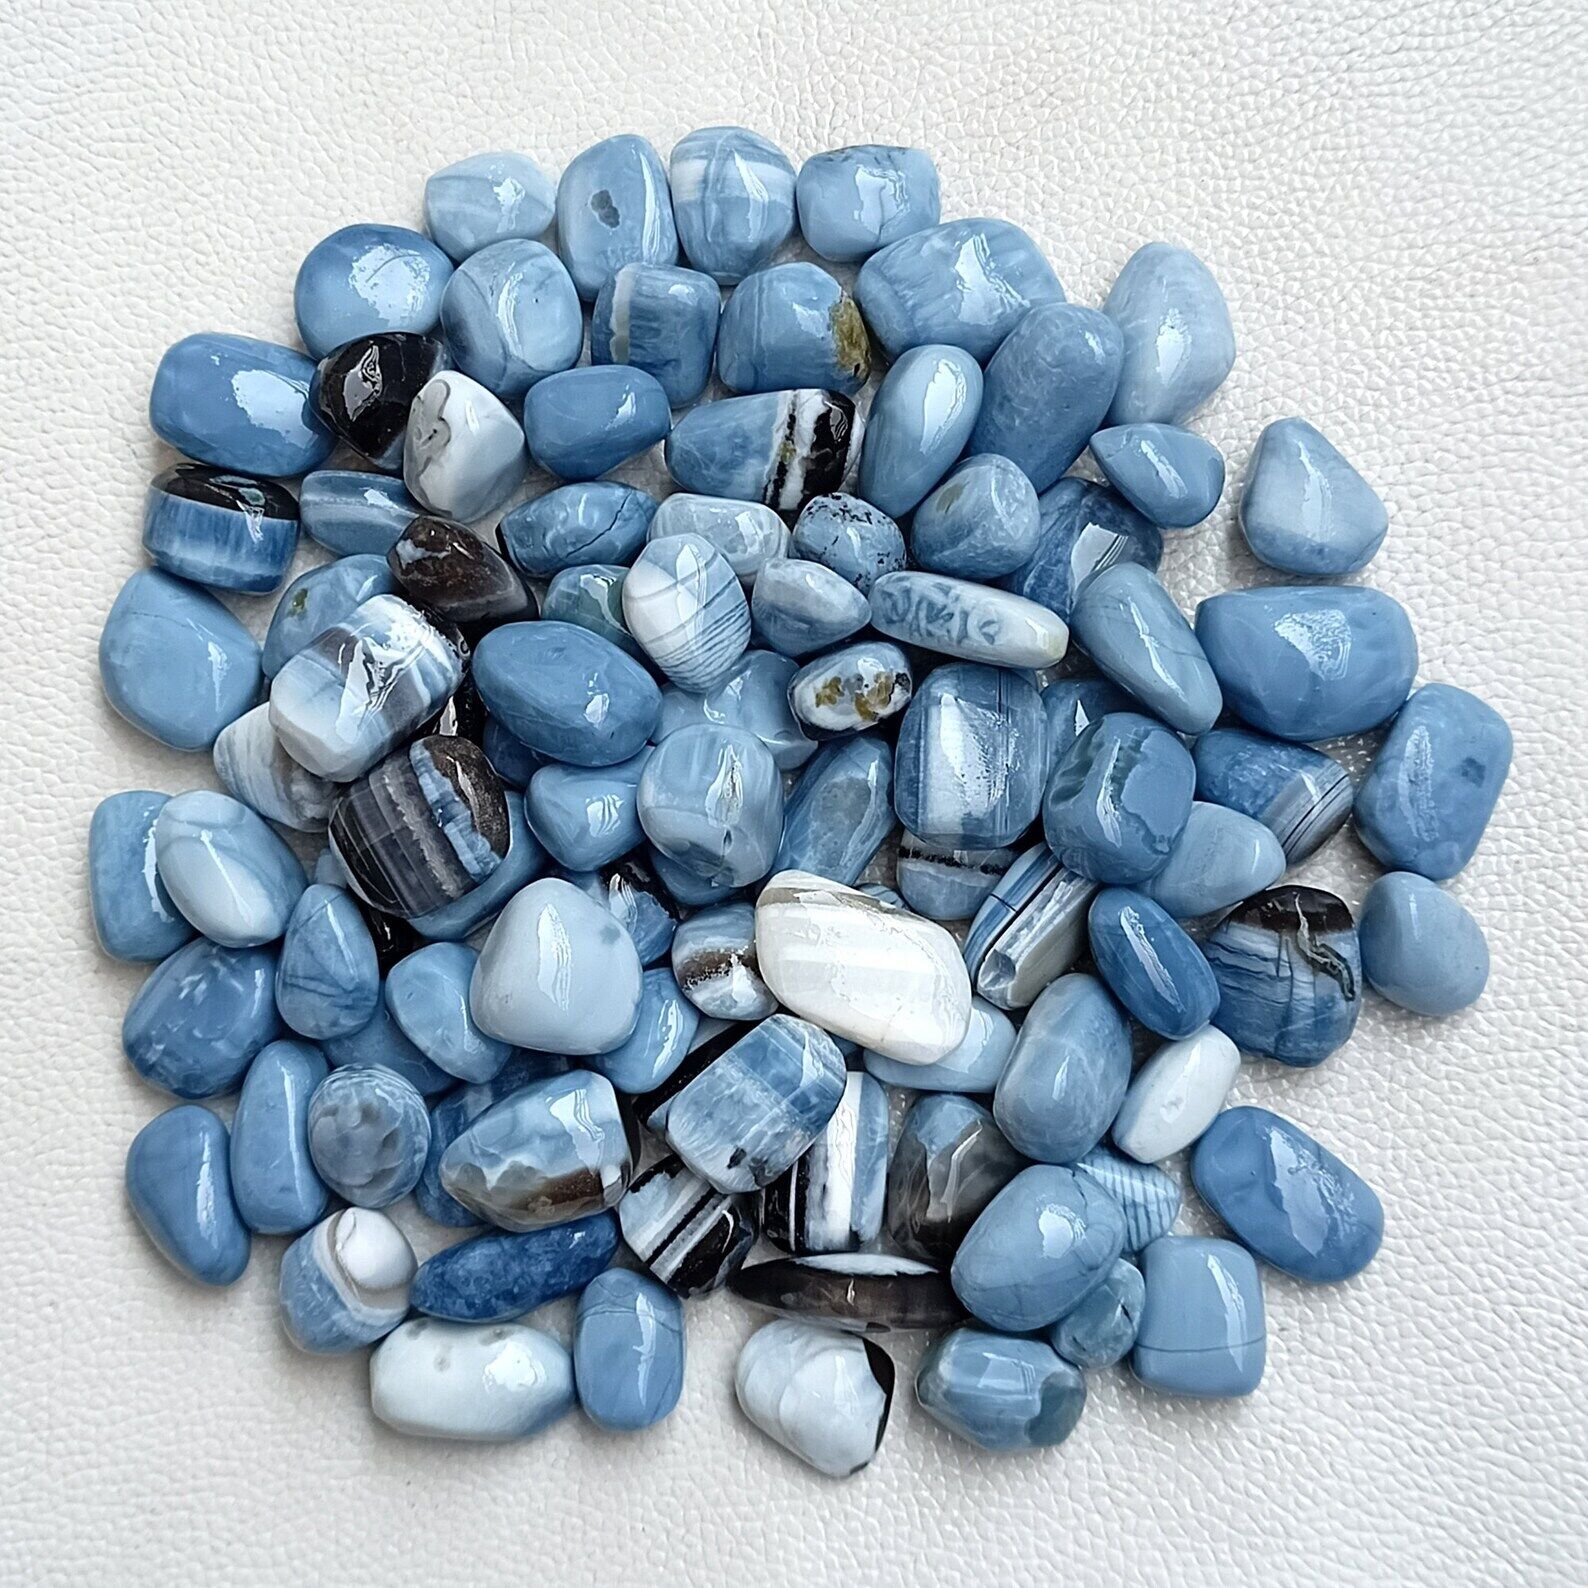 Blue Opal High Graded Tumbled Stone - 1 KG / 1 LB / 0.5 LB / 5 PCS / 1 PC